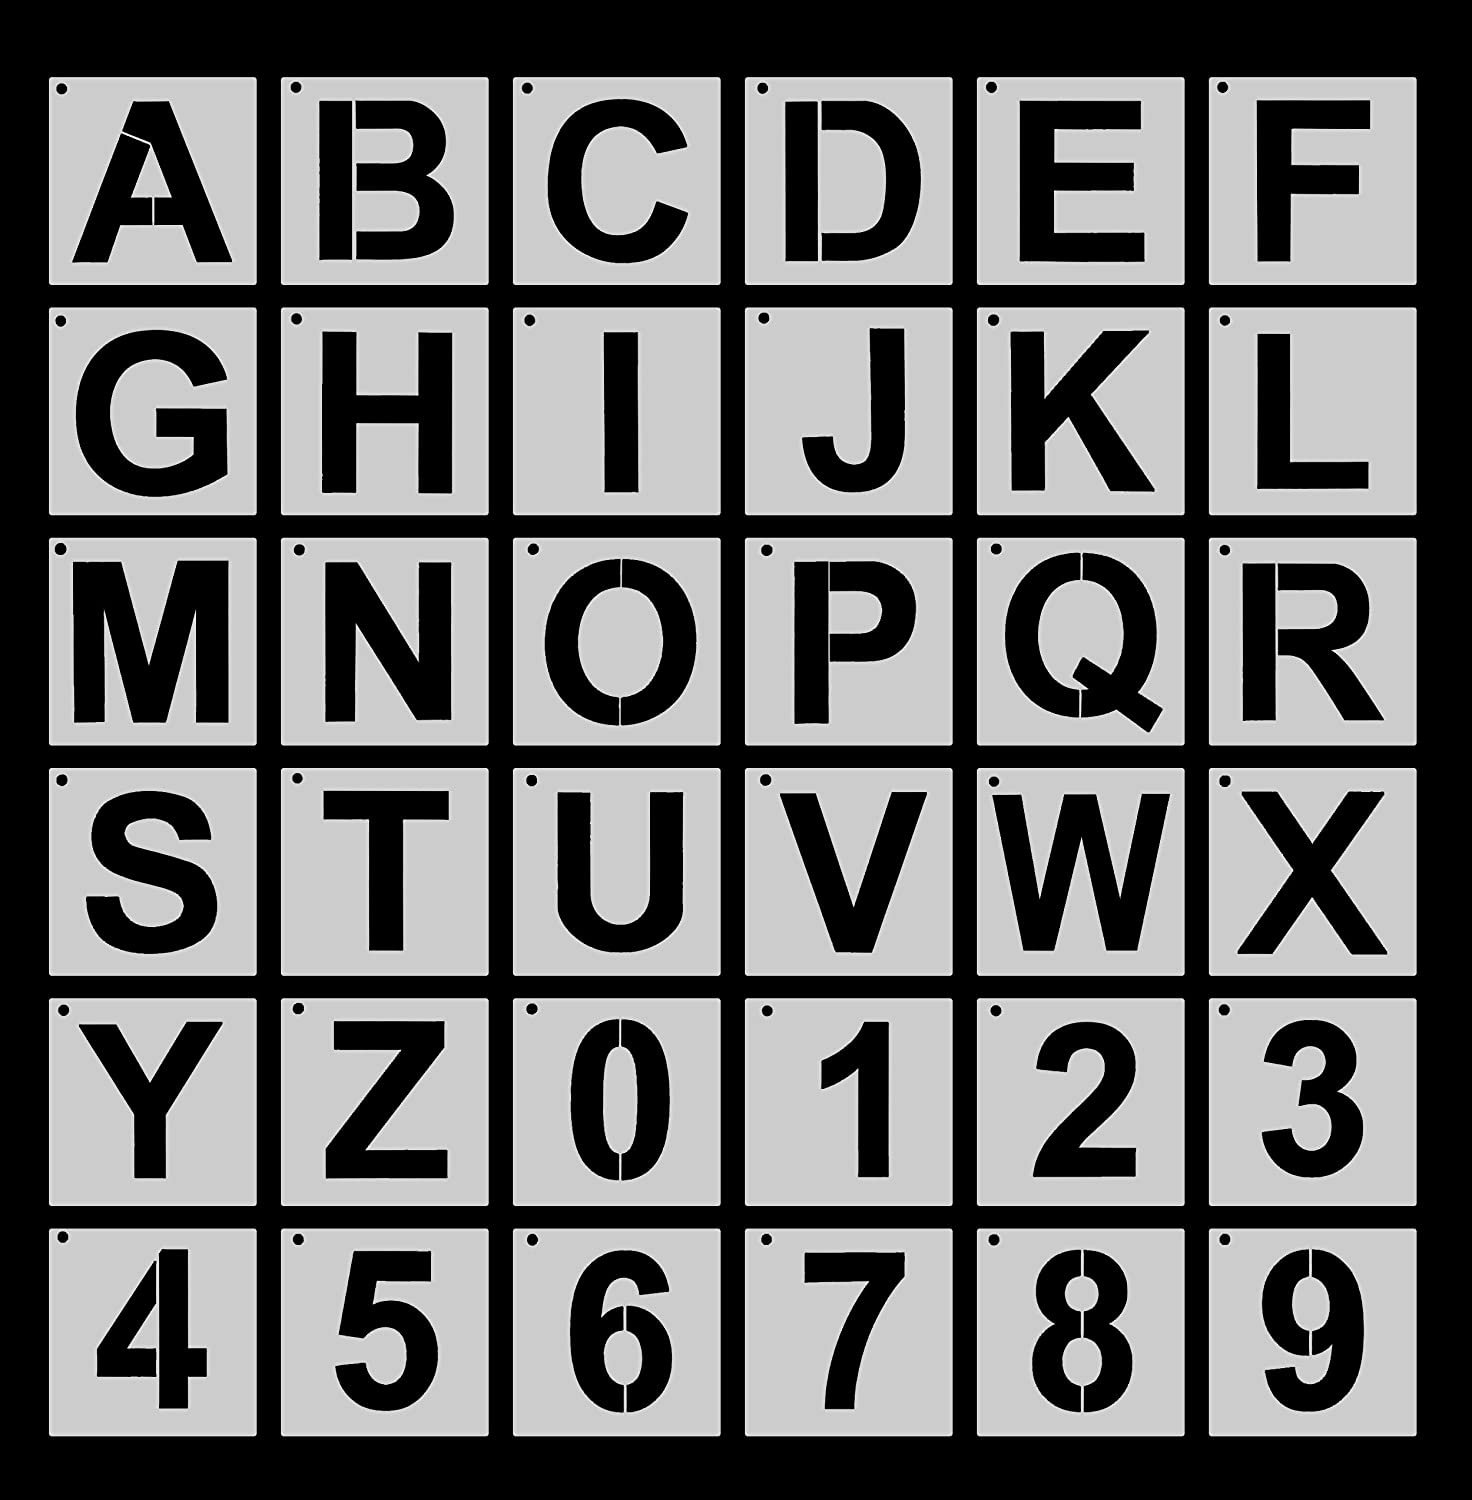 36 plantillas de letras del alfabeto, plantillas reutilizables de